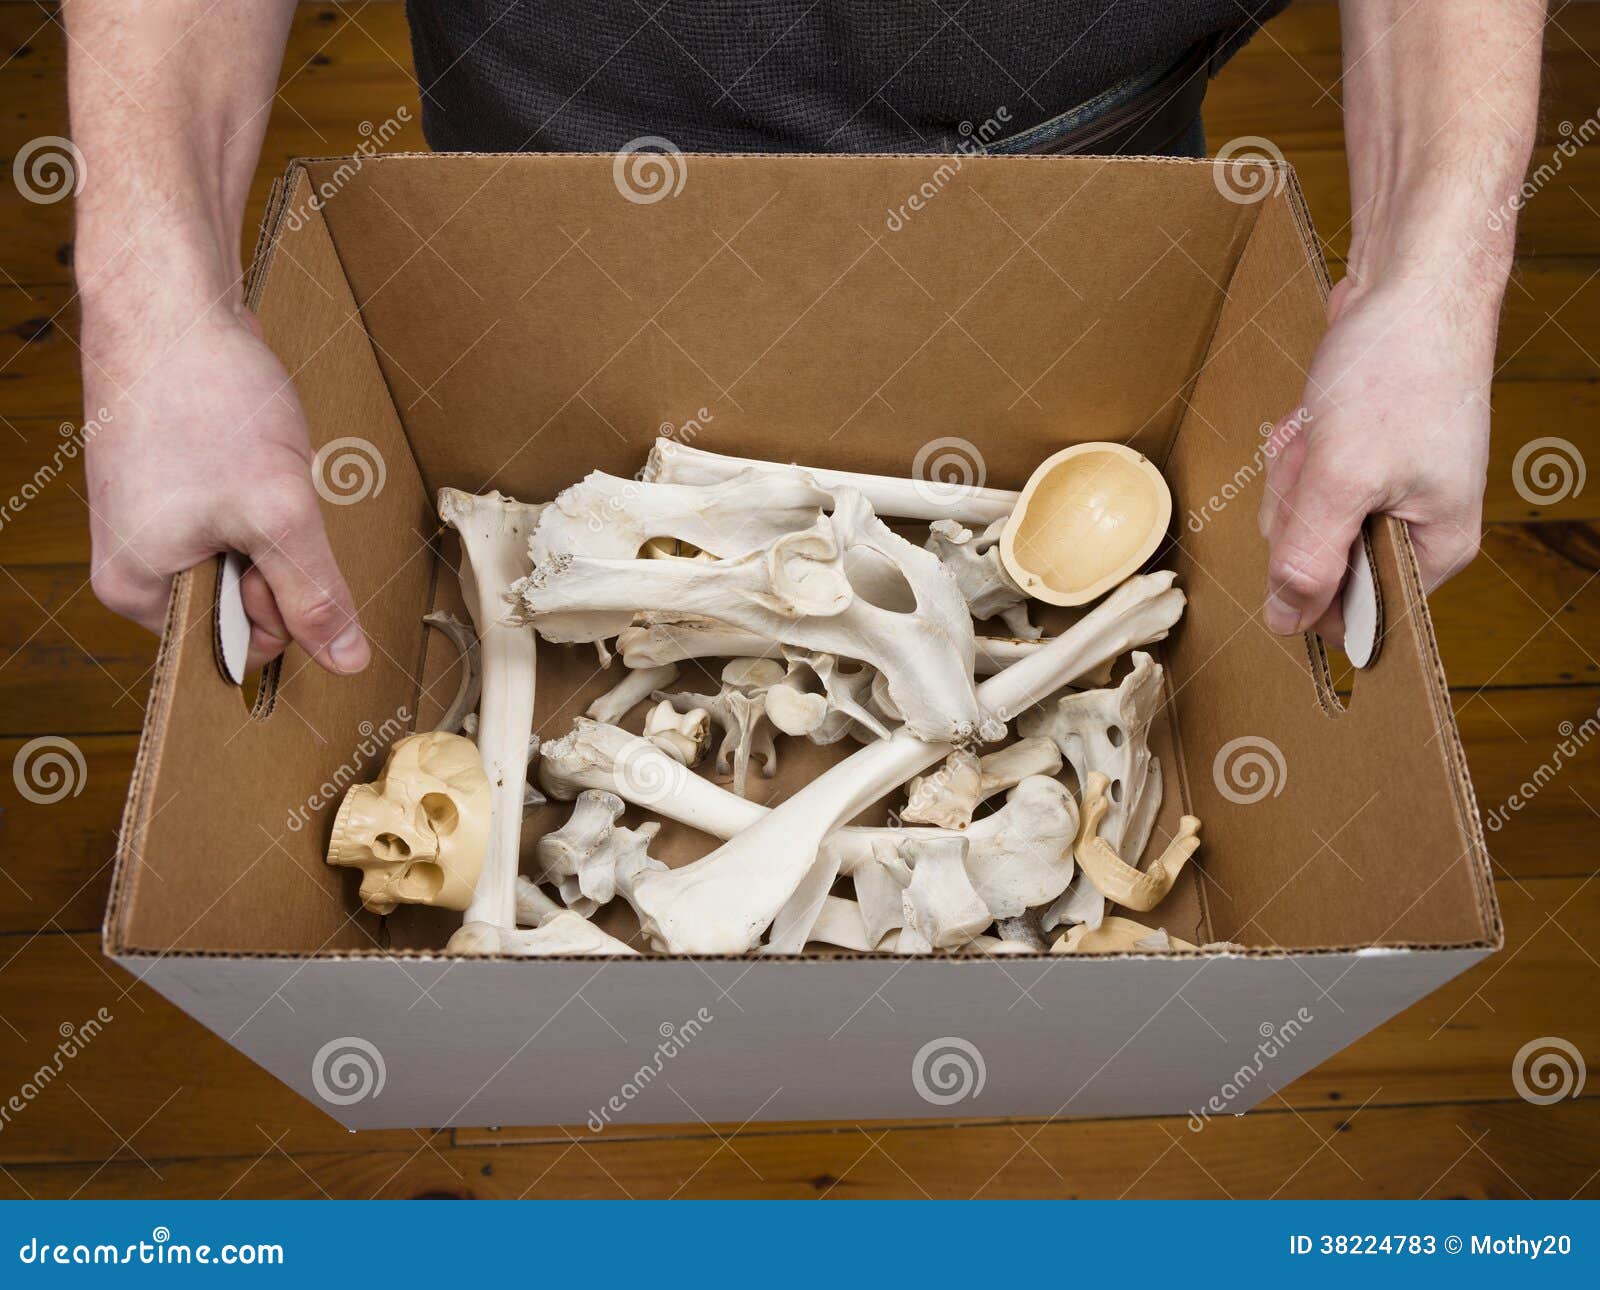 Bone box. Коробка с костями. Кости в коробке. Коробочка для косточек.